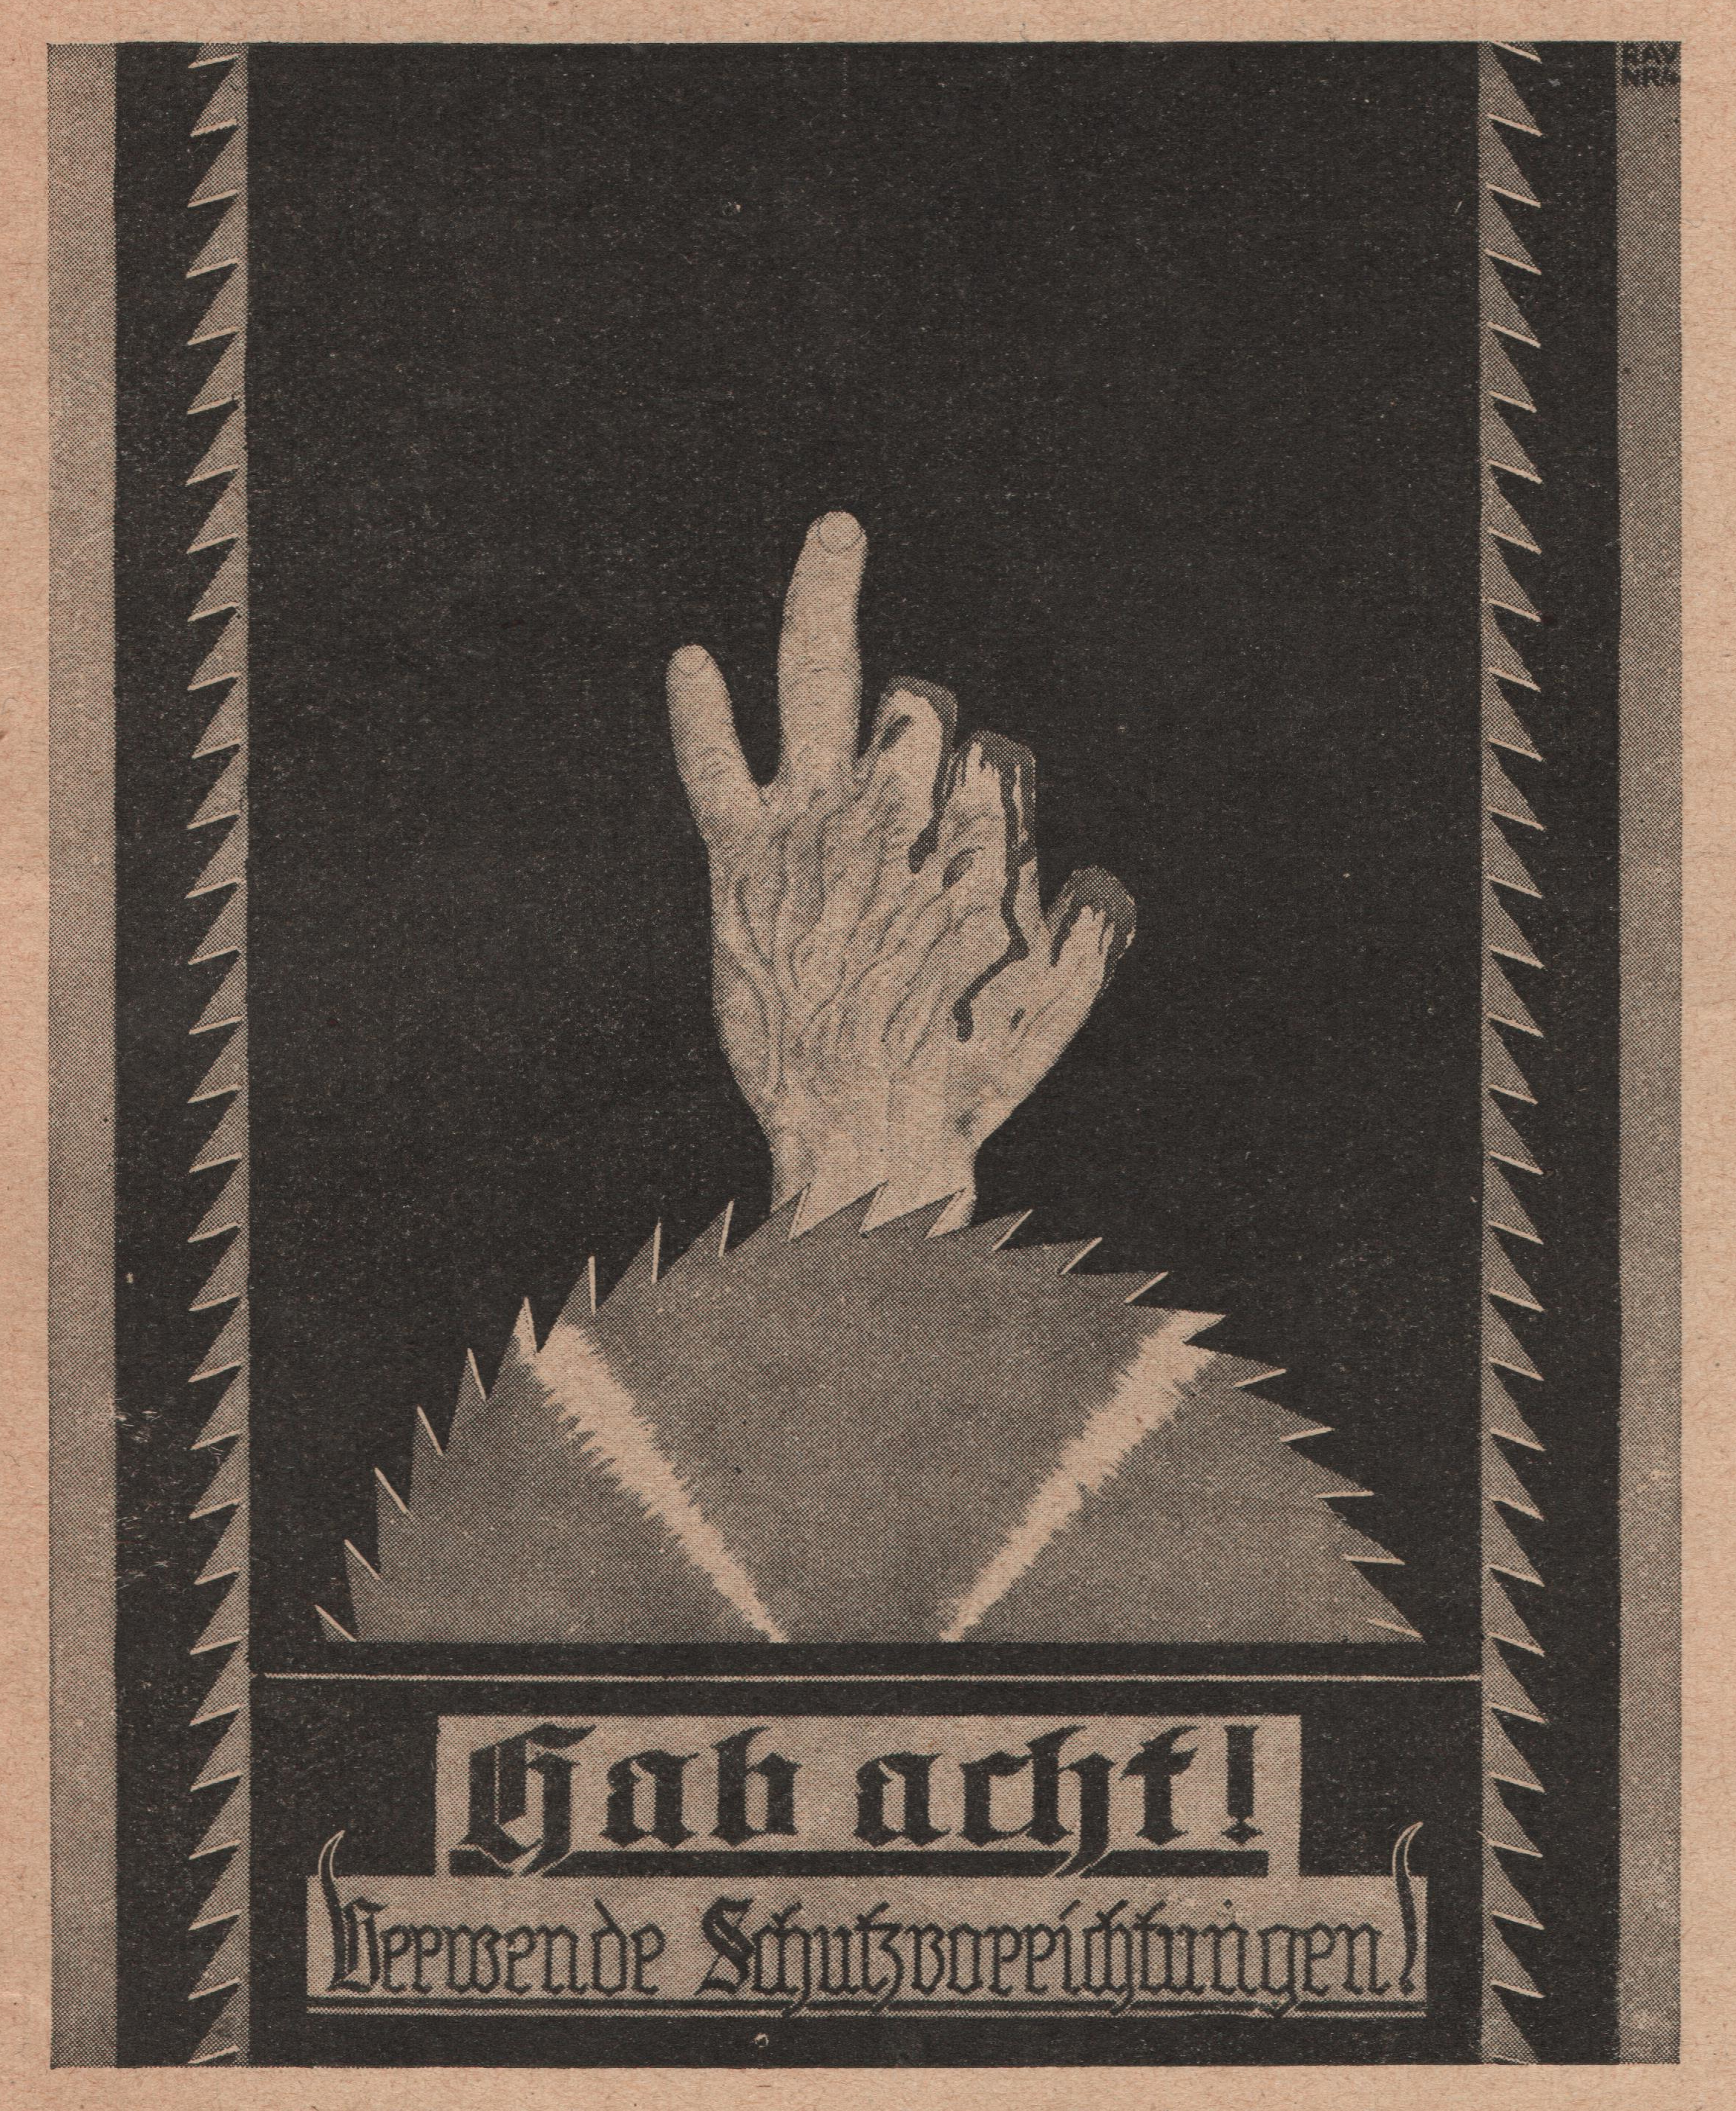 Schwarz-Weiß-Plakat mit Hand, die drei Finger verloren hat, darunter eine Kreissäge, darunter Text: Hab acht! Verwende Schutzvorrichtungen! 